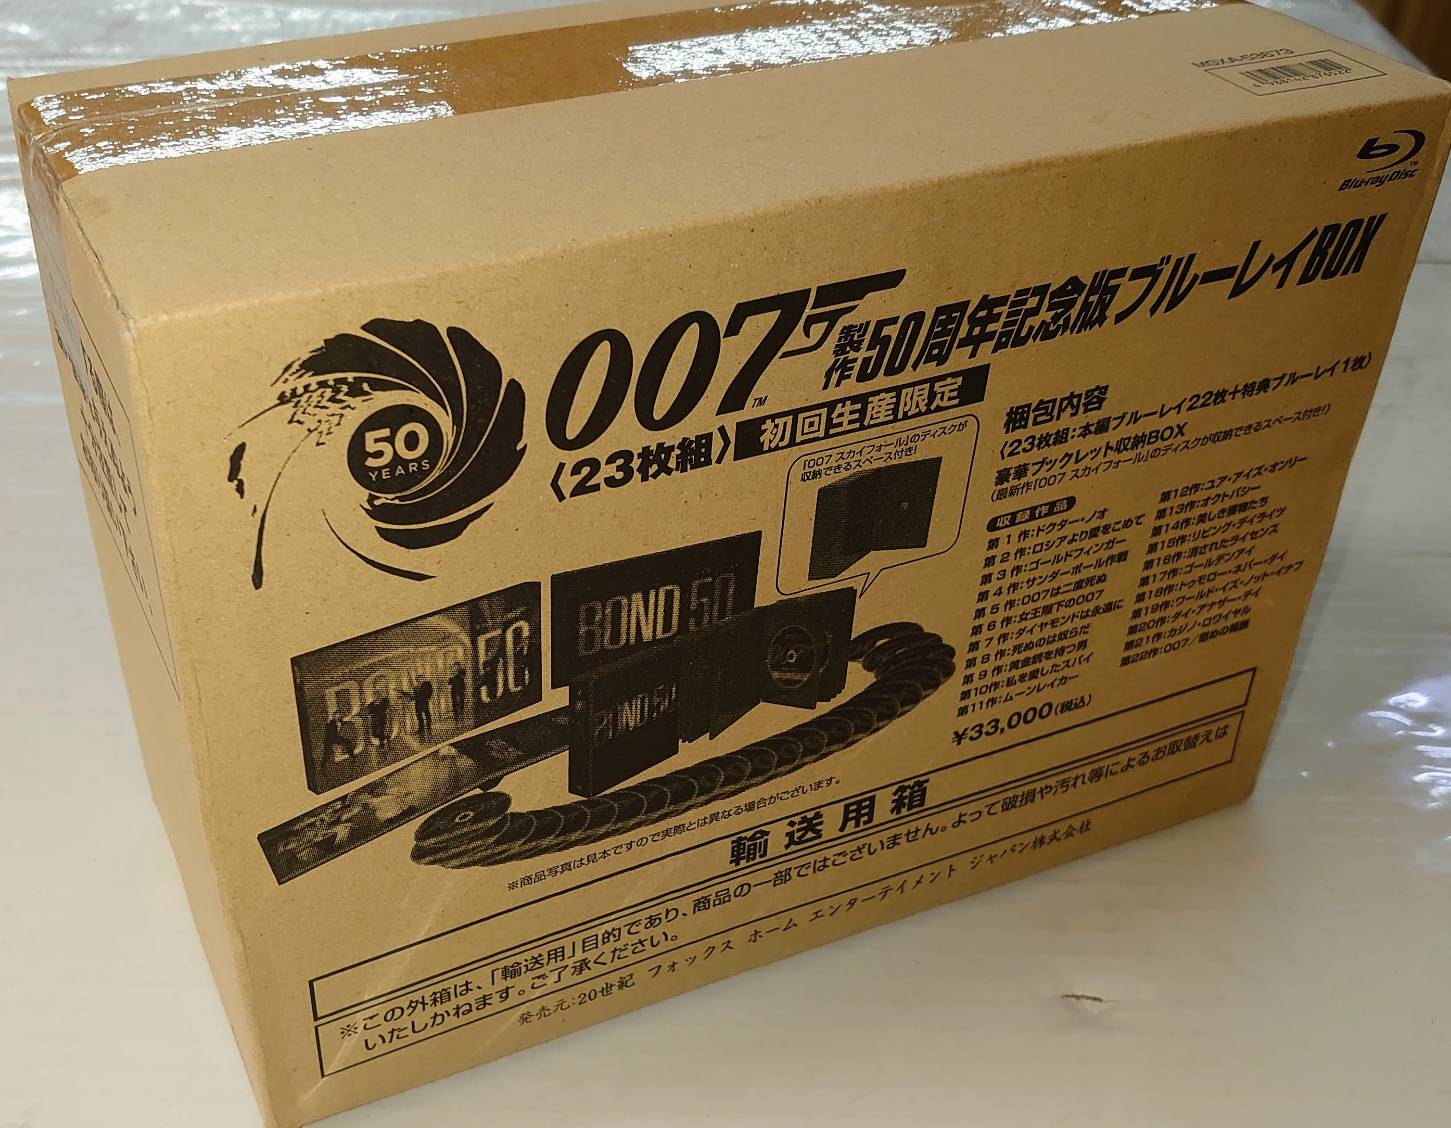 11970円 一番の贈り物 007 製作50周年記念版 ブルーレイBOX〈初回生産限定 23枚組〉